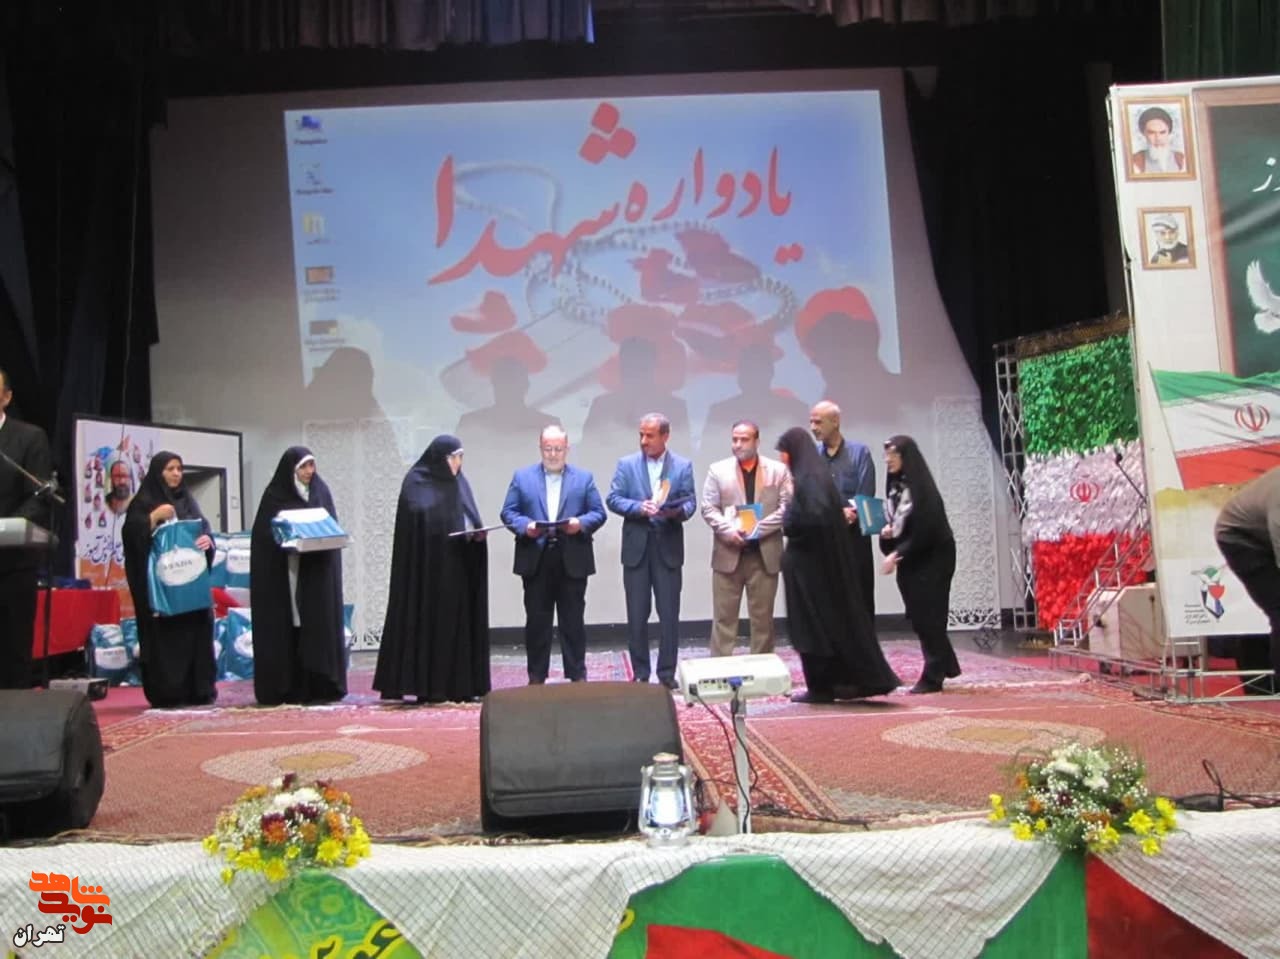 کنگره شهدای معلم و دانش آموز، در آموزش و پرورش منطقه 10 برگزار شد